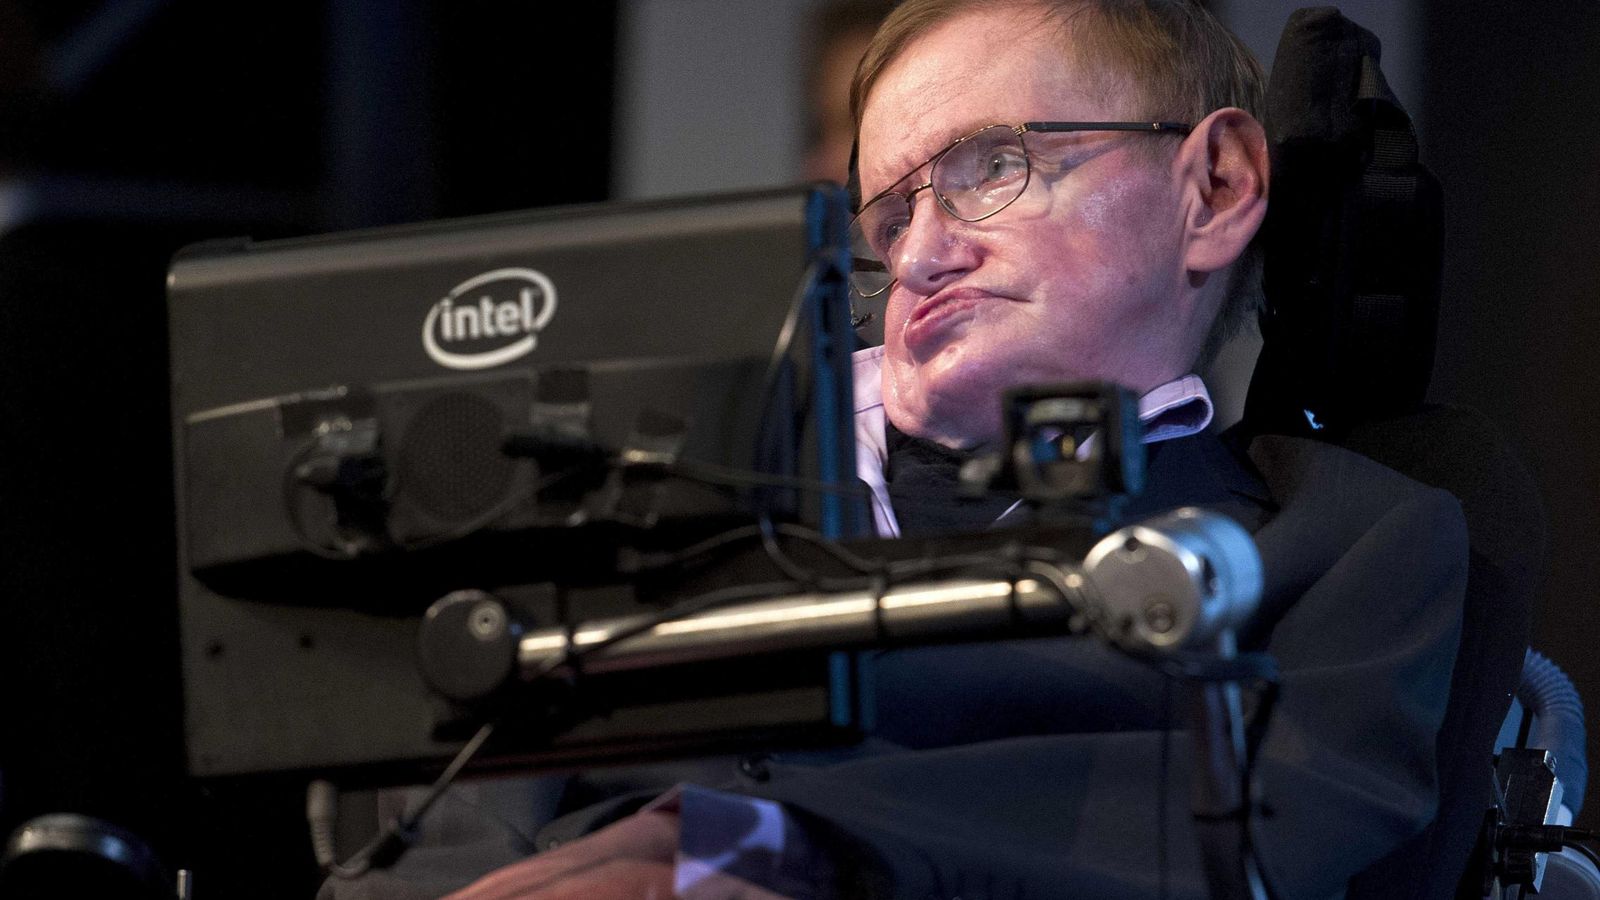 Foto: Hawking fue diagnosticado cuando la tecnología estaba mucho menos desarrollada. (Efe/Evert Elzinga)